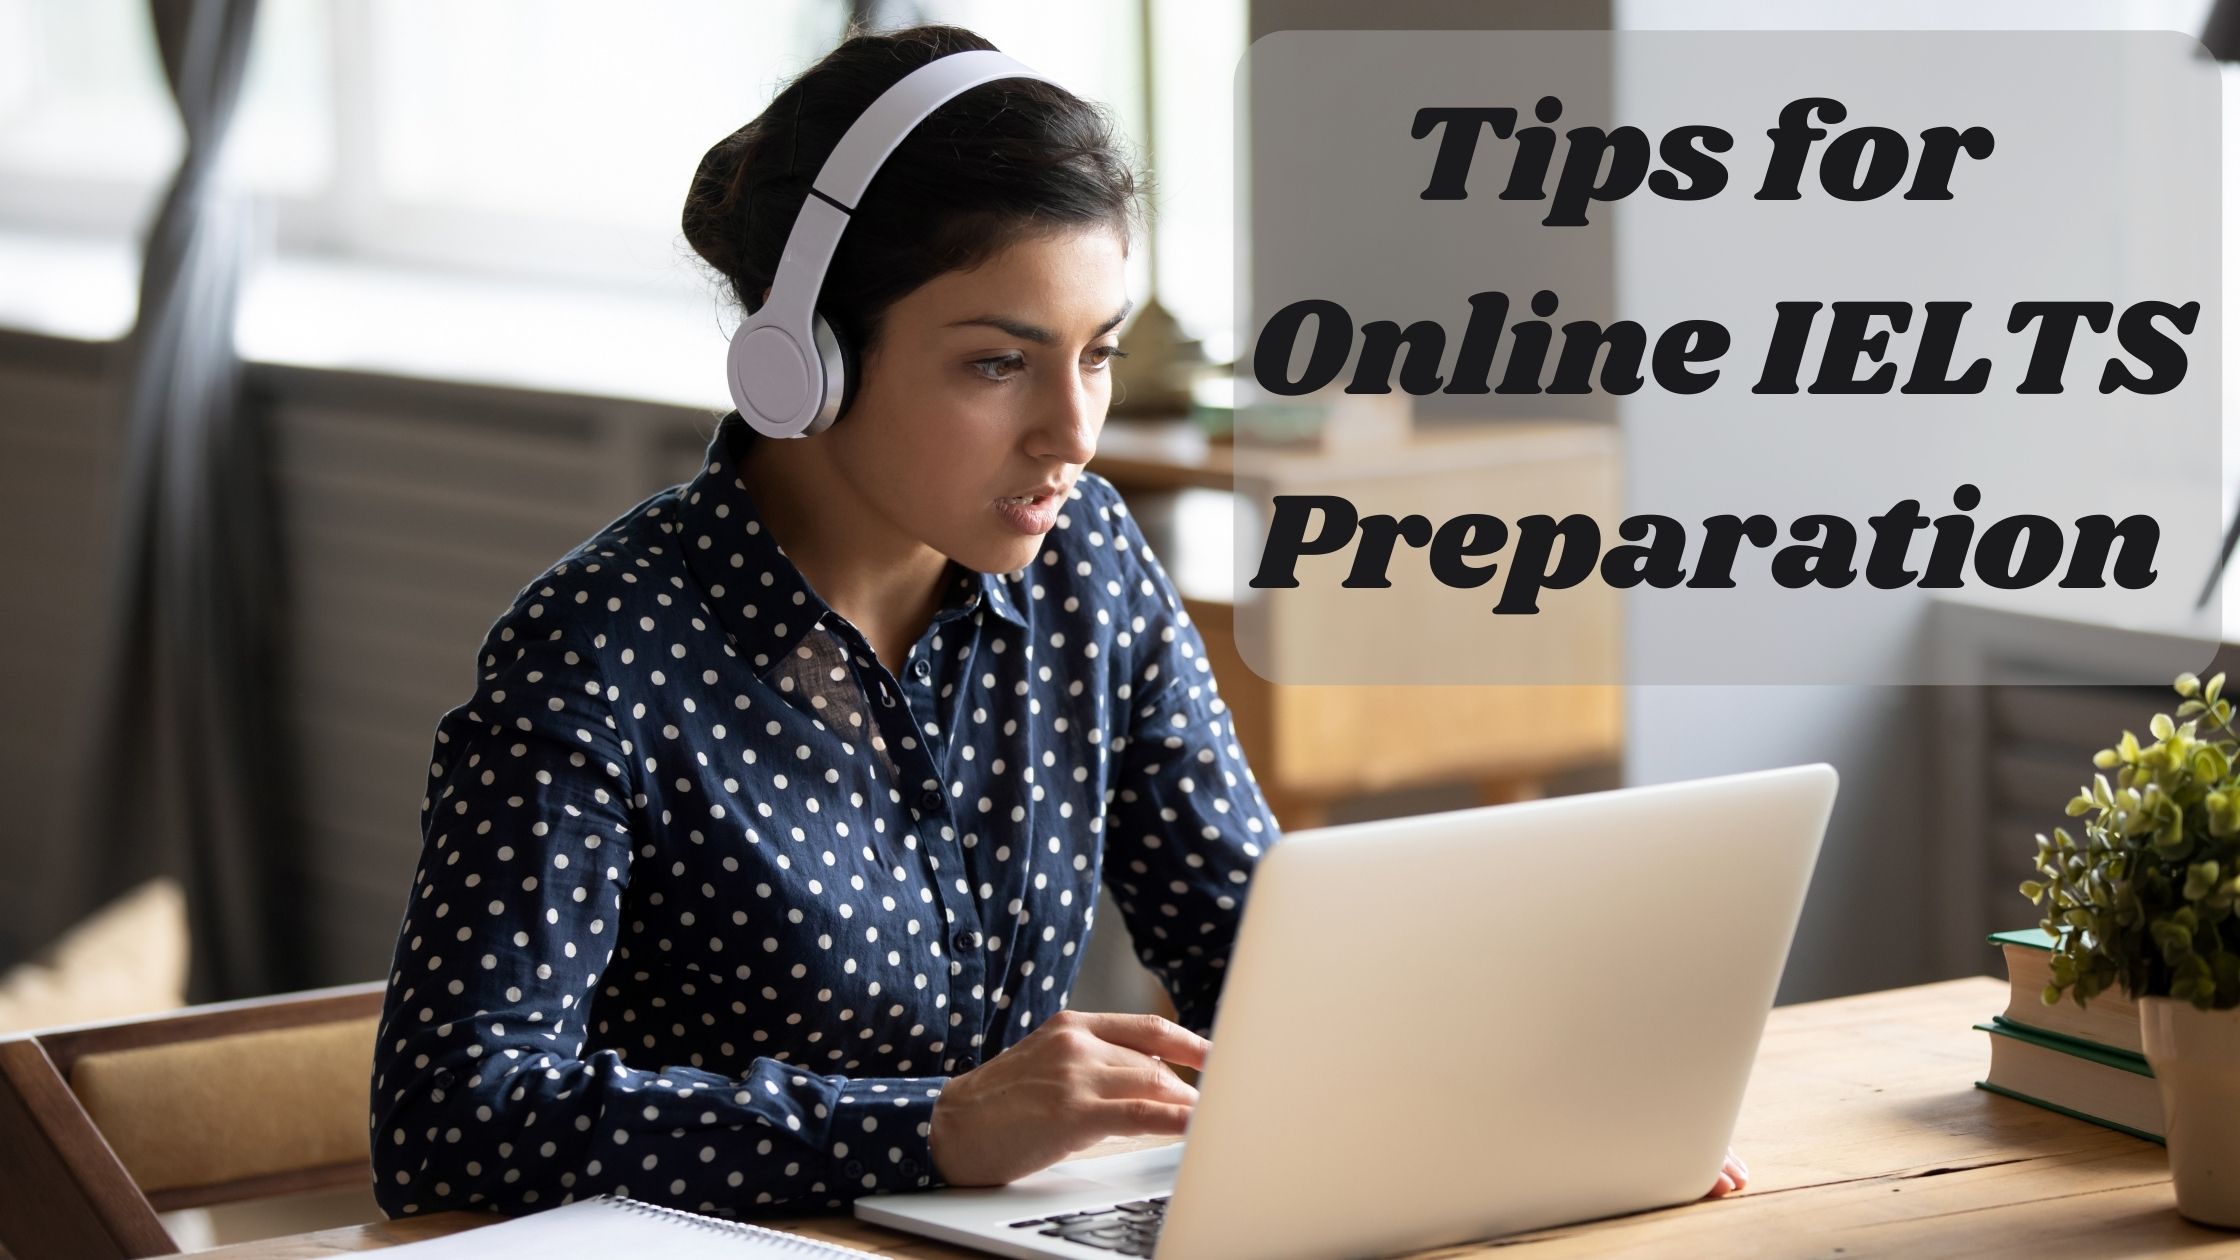 Tips-for-Online-IELTS-Preparation